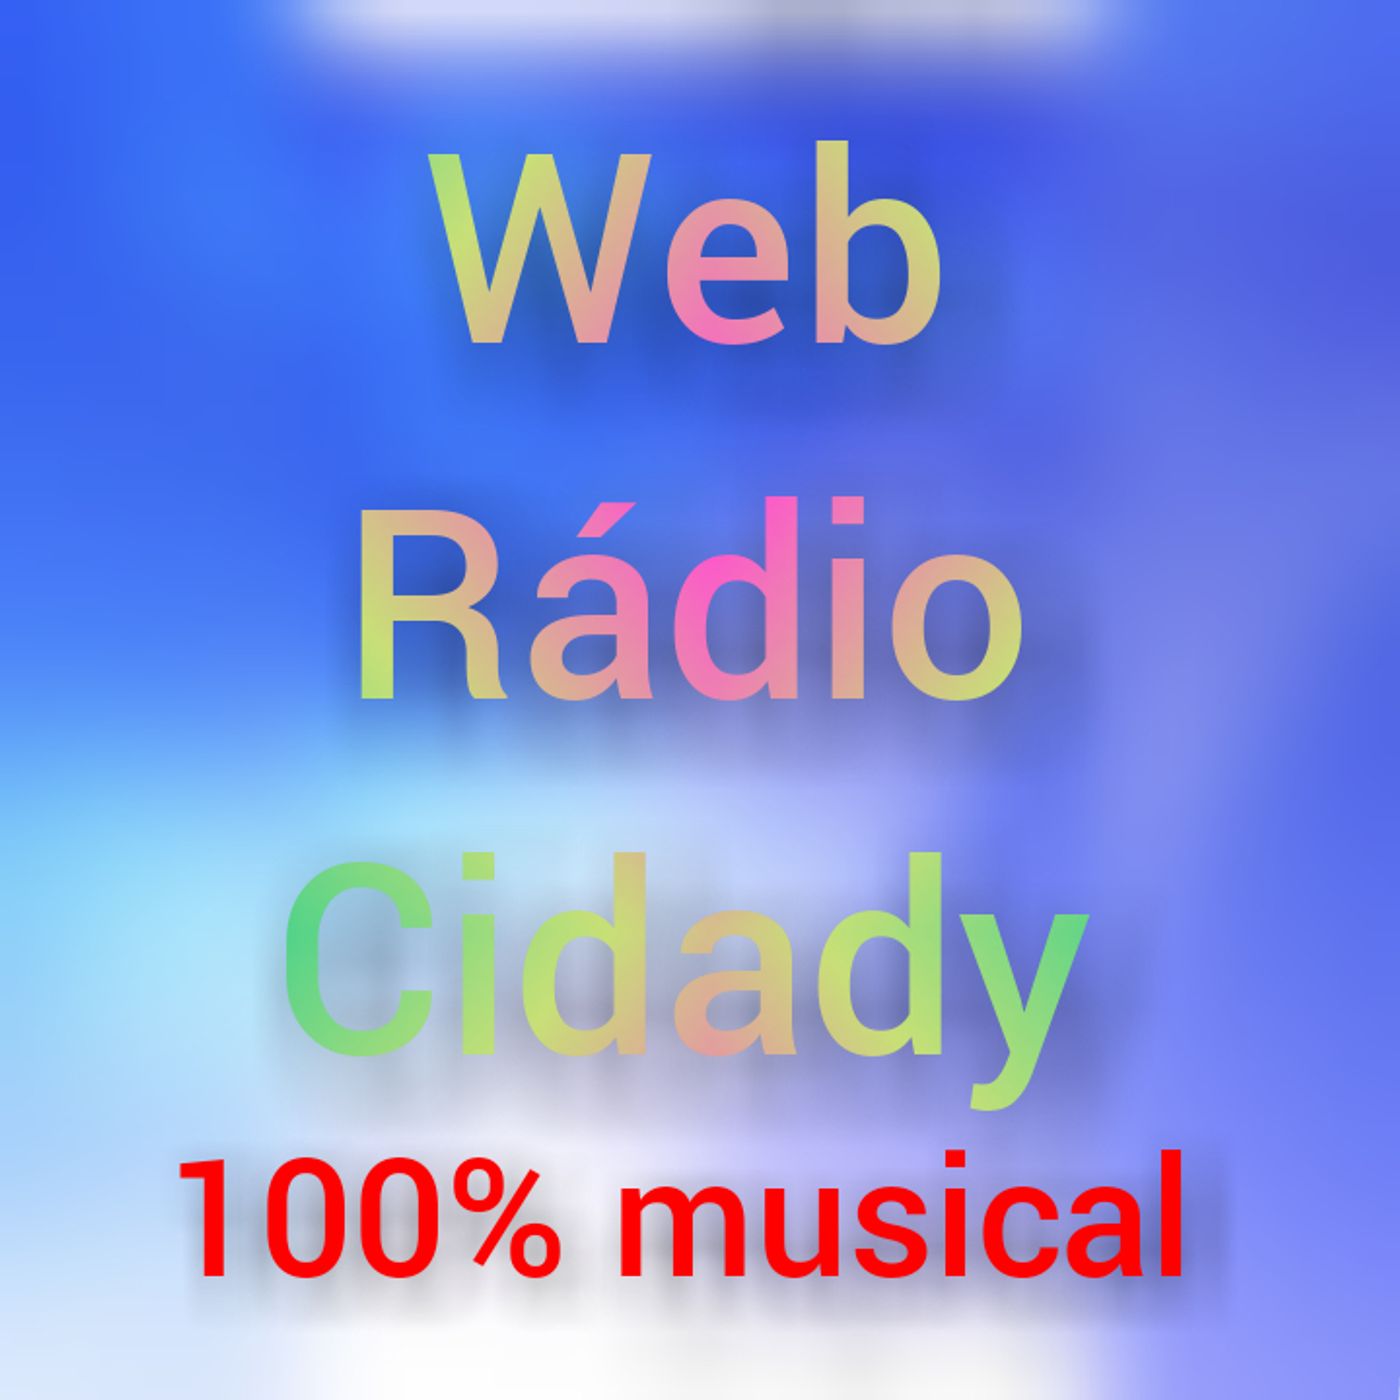 Web rádio Cidade